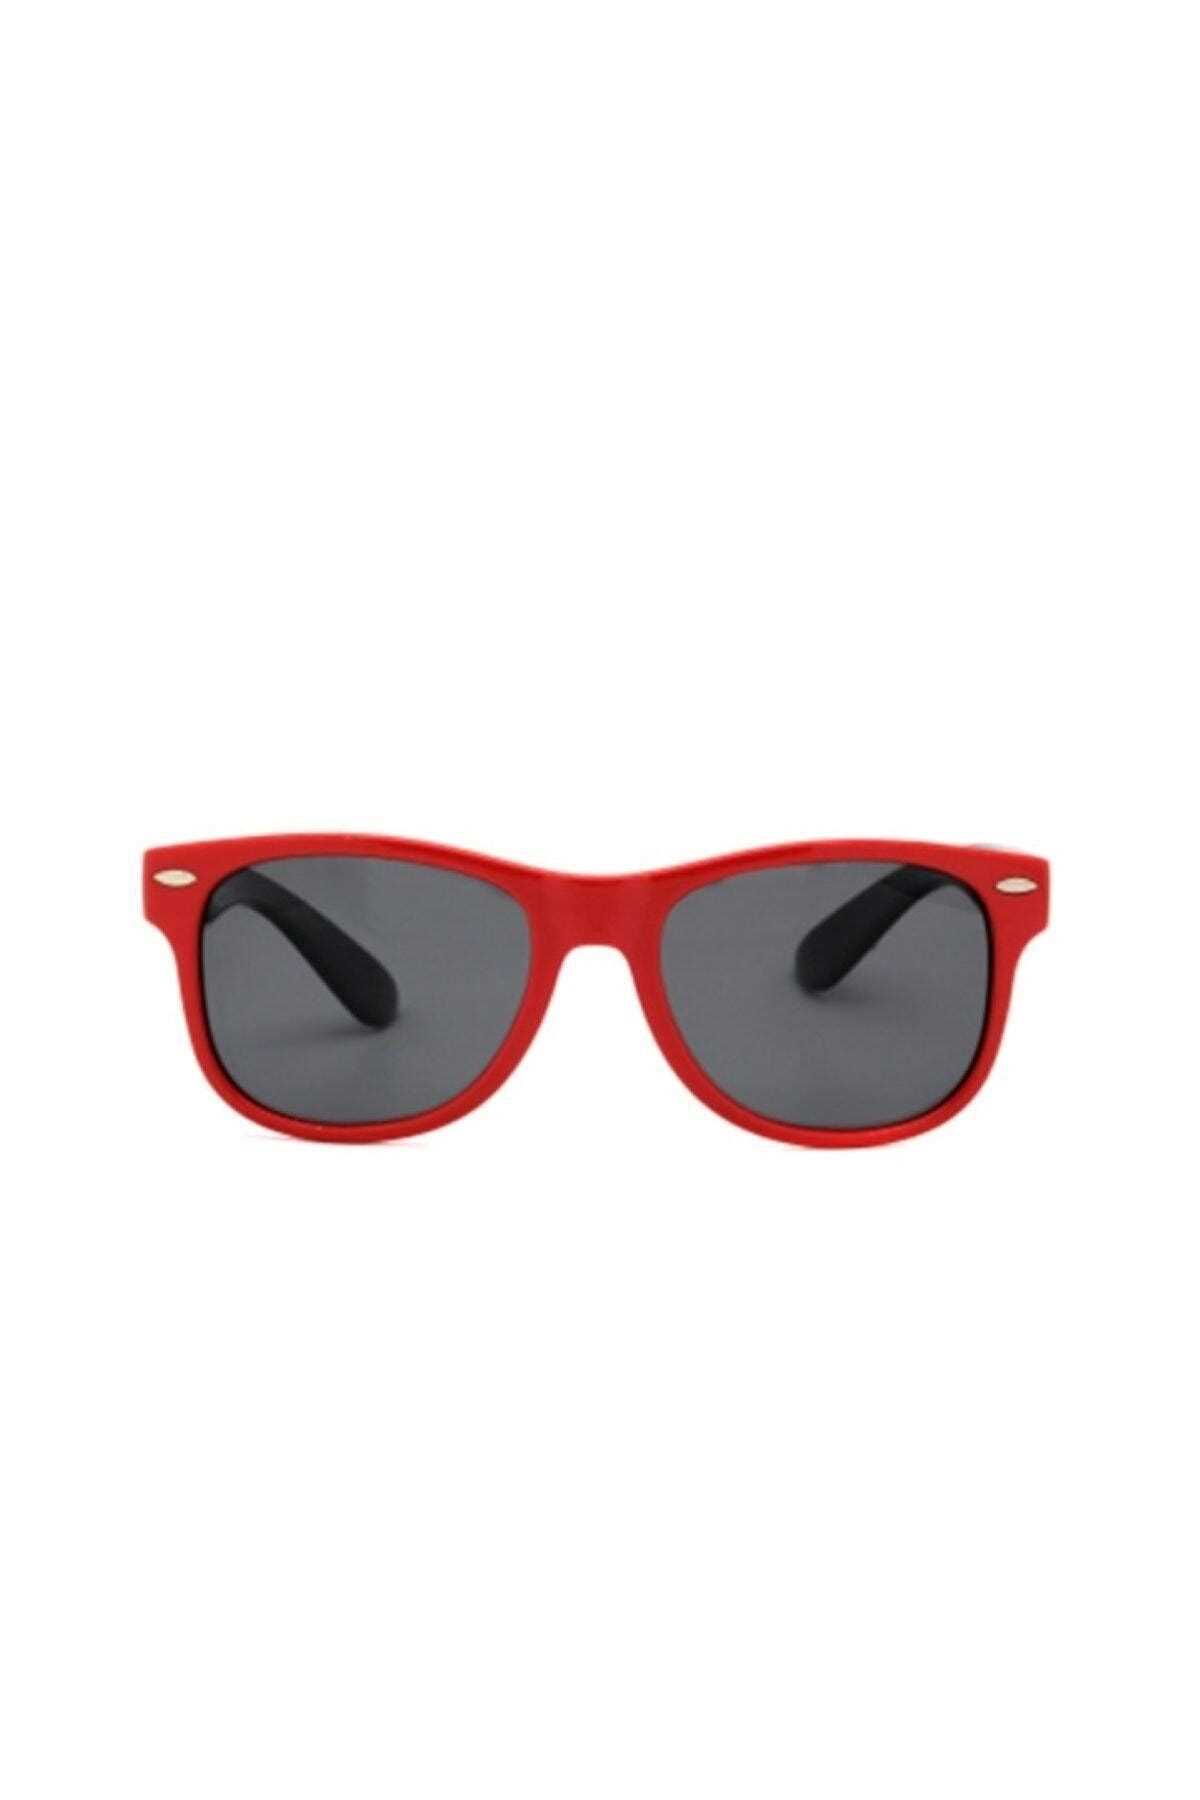 خرید نقدی عینک آفتابی پسرانه فروشگاه اینترنتی برند Osse رنگ قرمز ty32180229